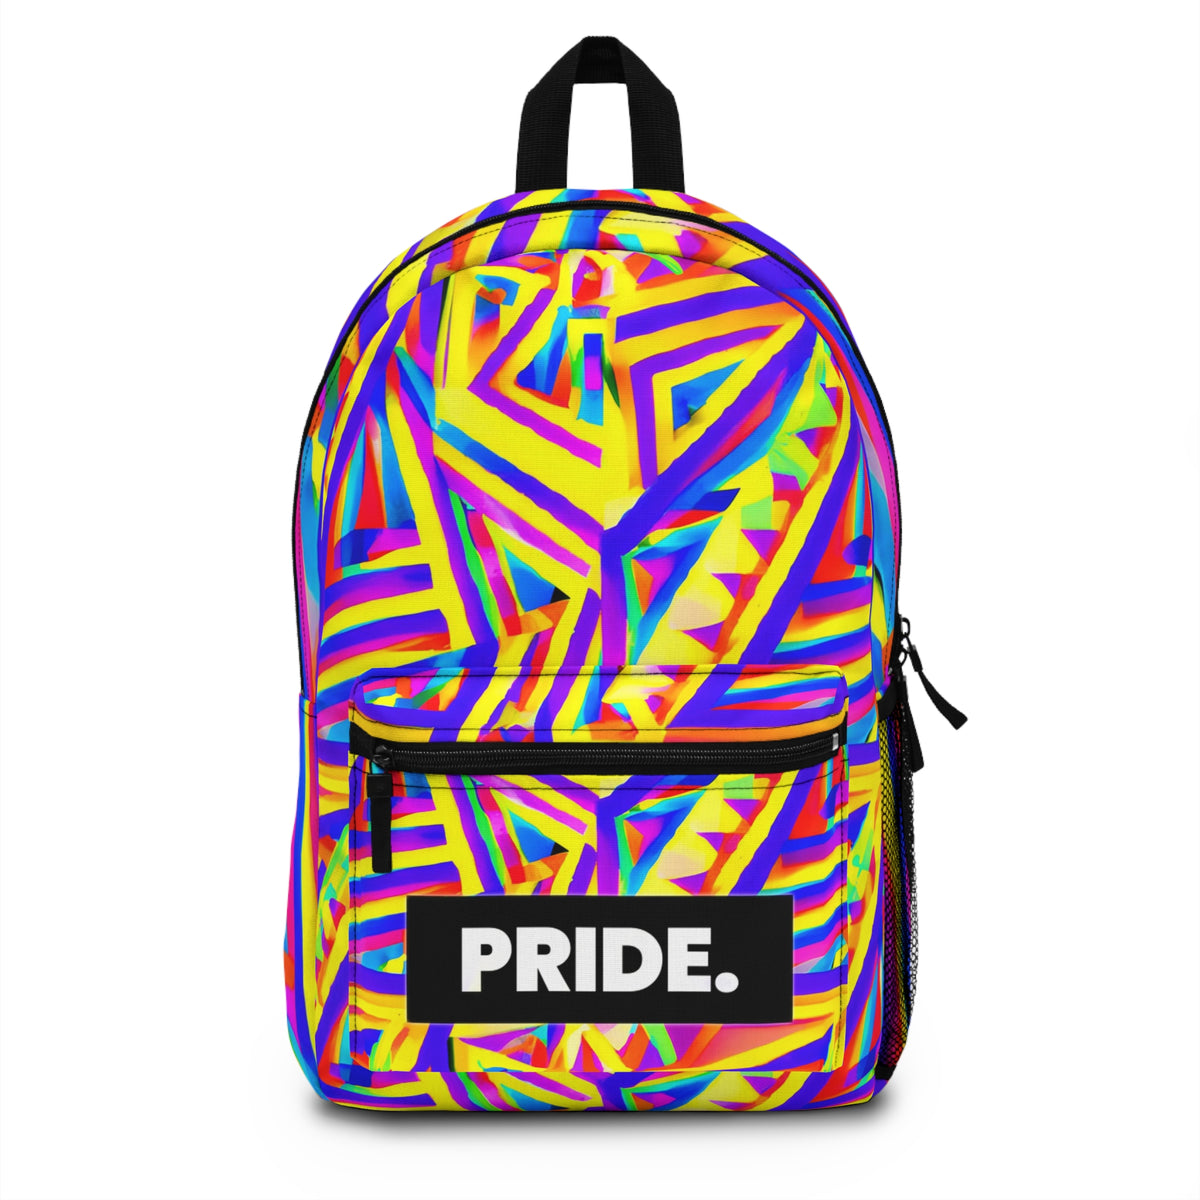 FlamingQueeny - Gay Pride Backpack